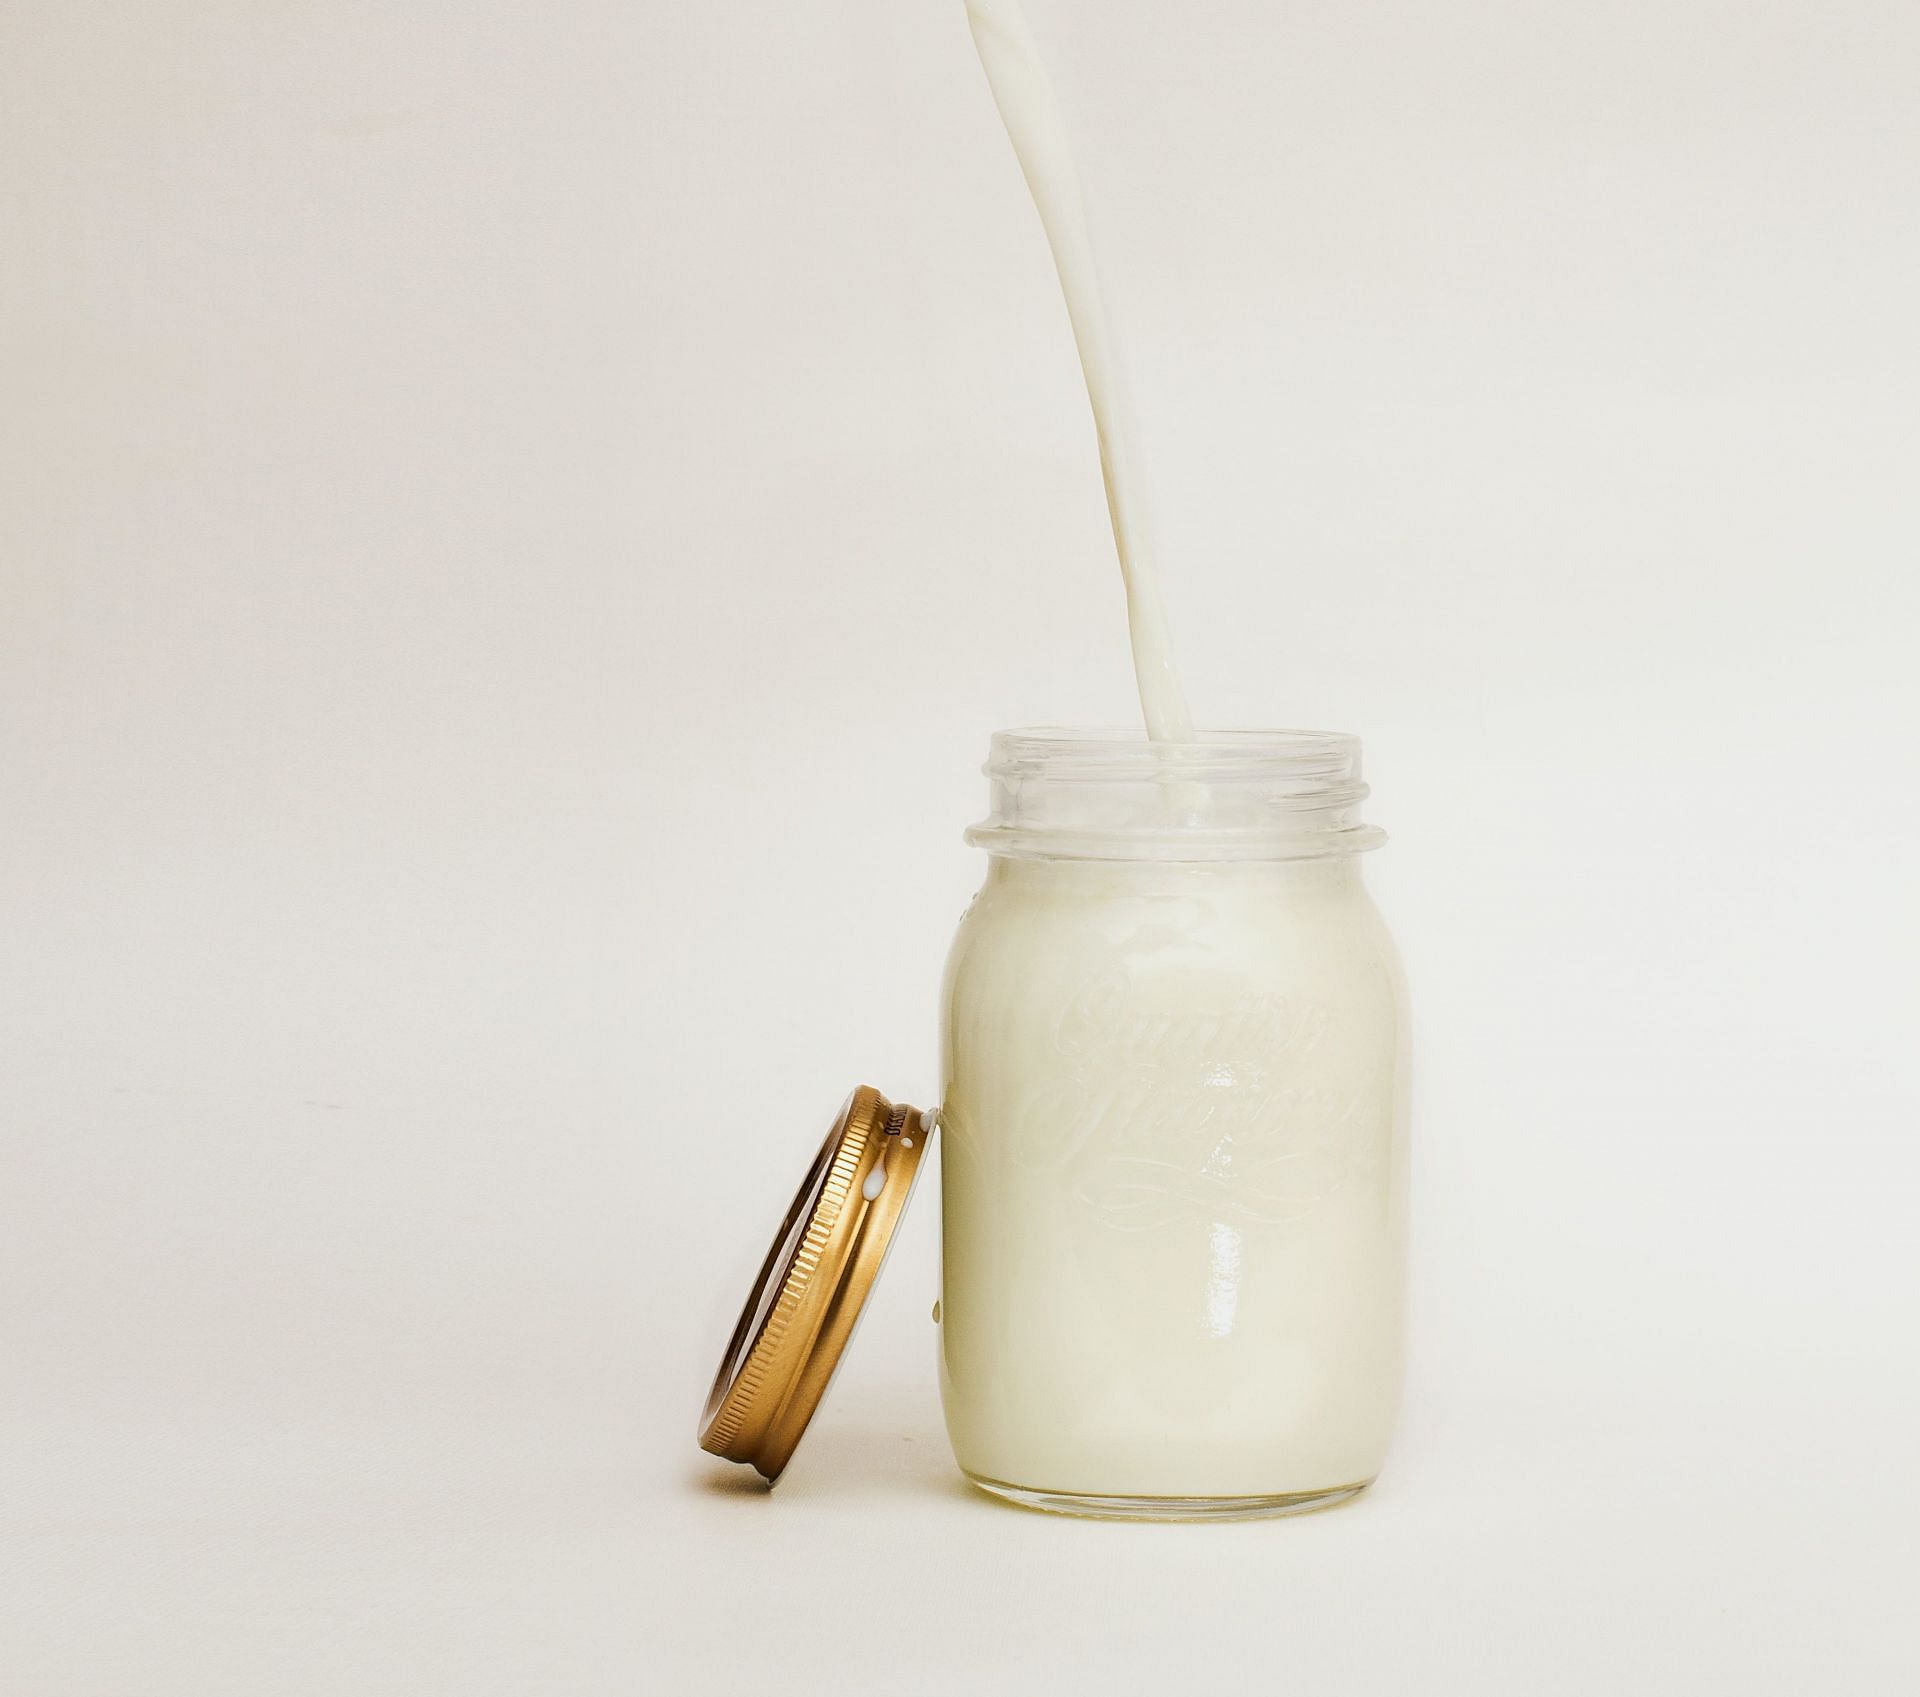 Potato milk (Image via Unsplash/ Nikolai Chernichenko)